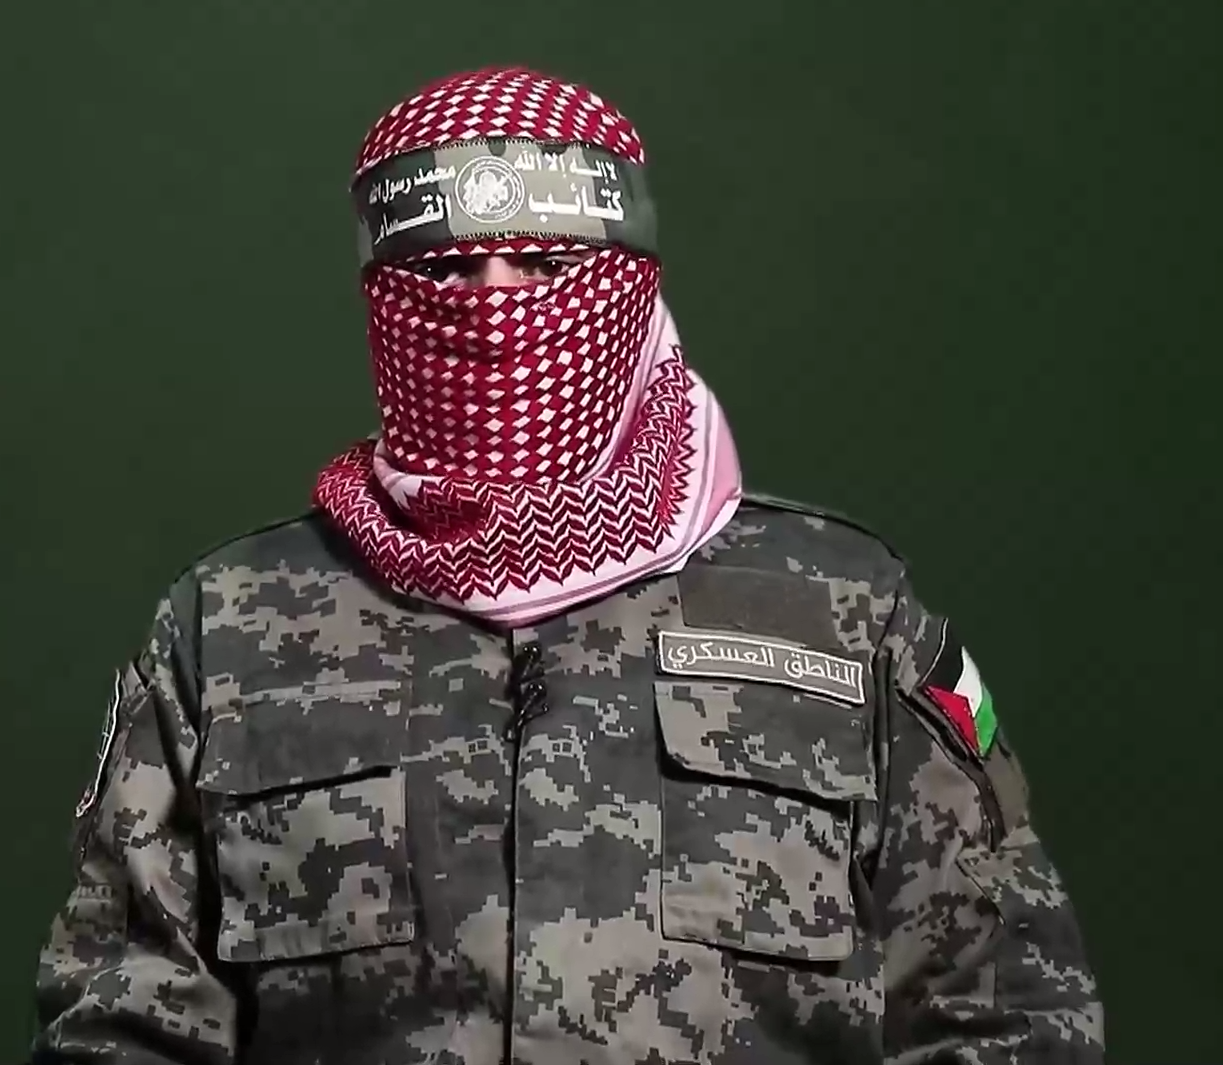 أبو عبيدة: مجاهدو القسام دمروا 43 آلية عسكرية وأجهزوا على 15 جنديا إسرائيليا خلال الأيام الماضية